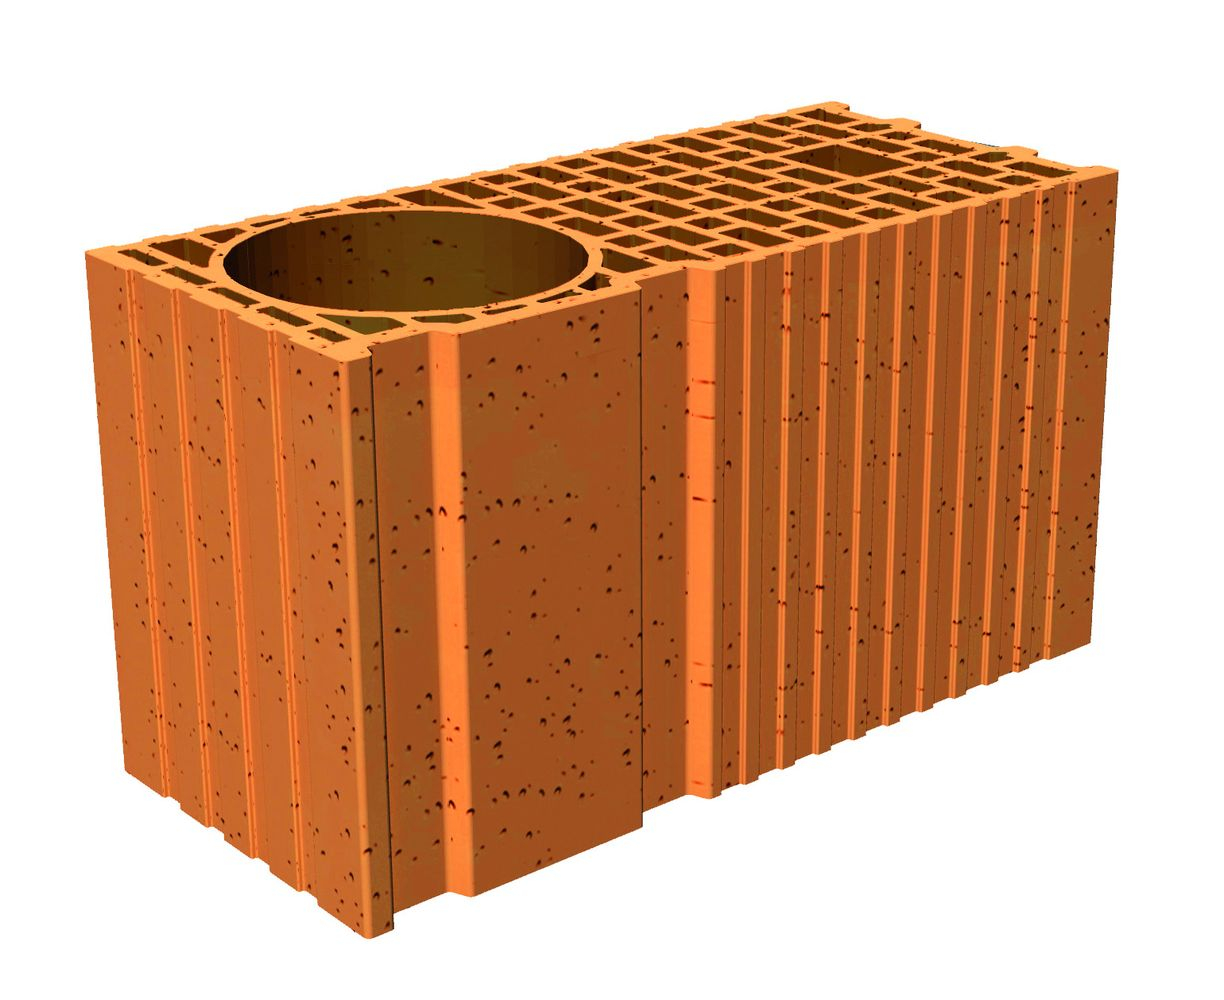 poteau-brique-porotherm-r20-45x20x24-9cm-wienerberger-0